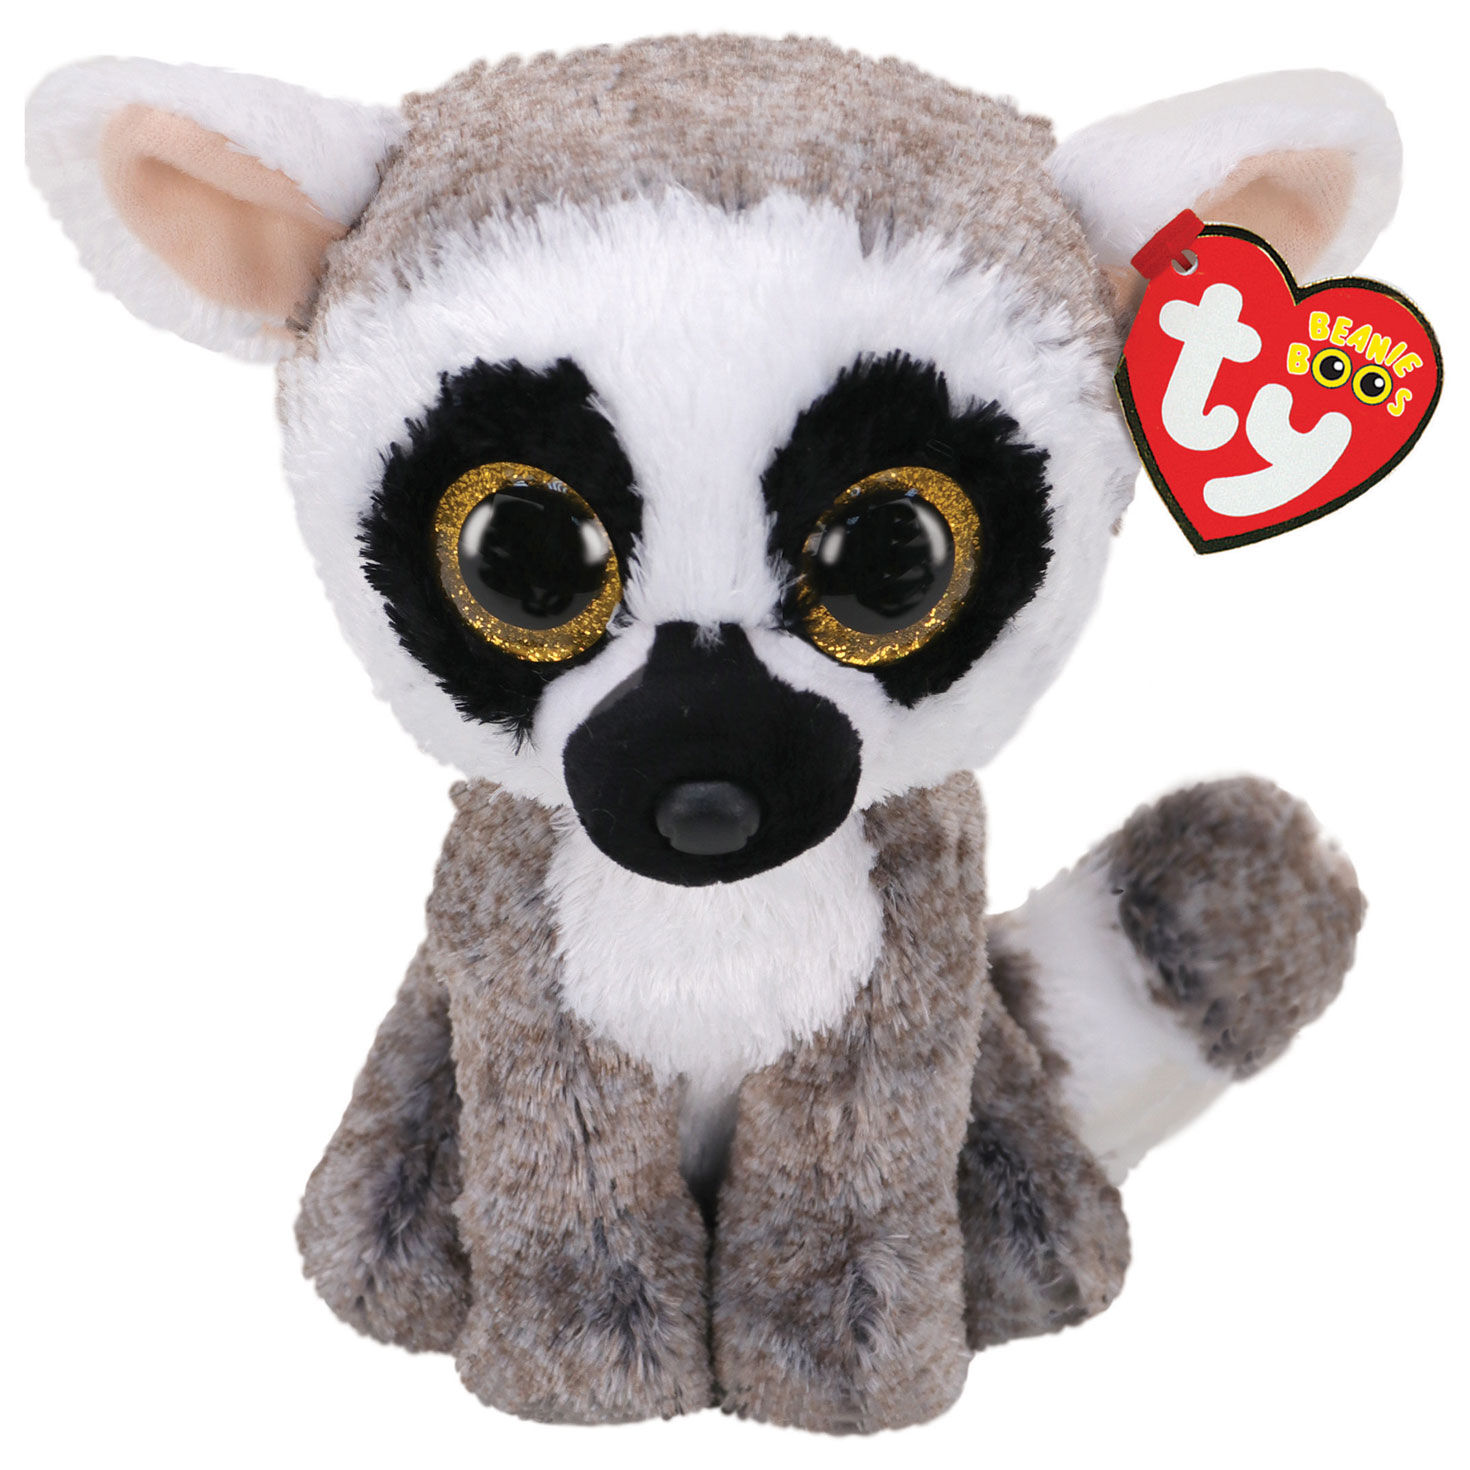 lemur stuffed animal